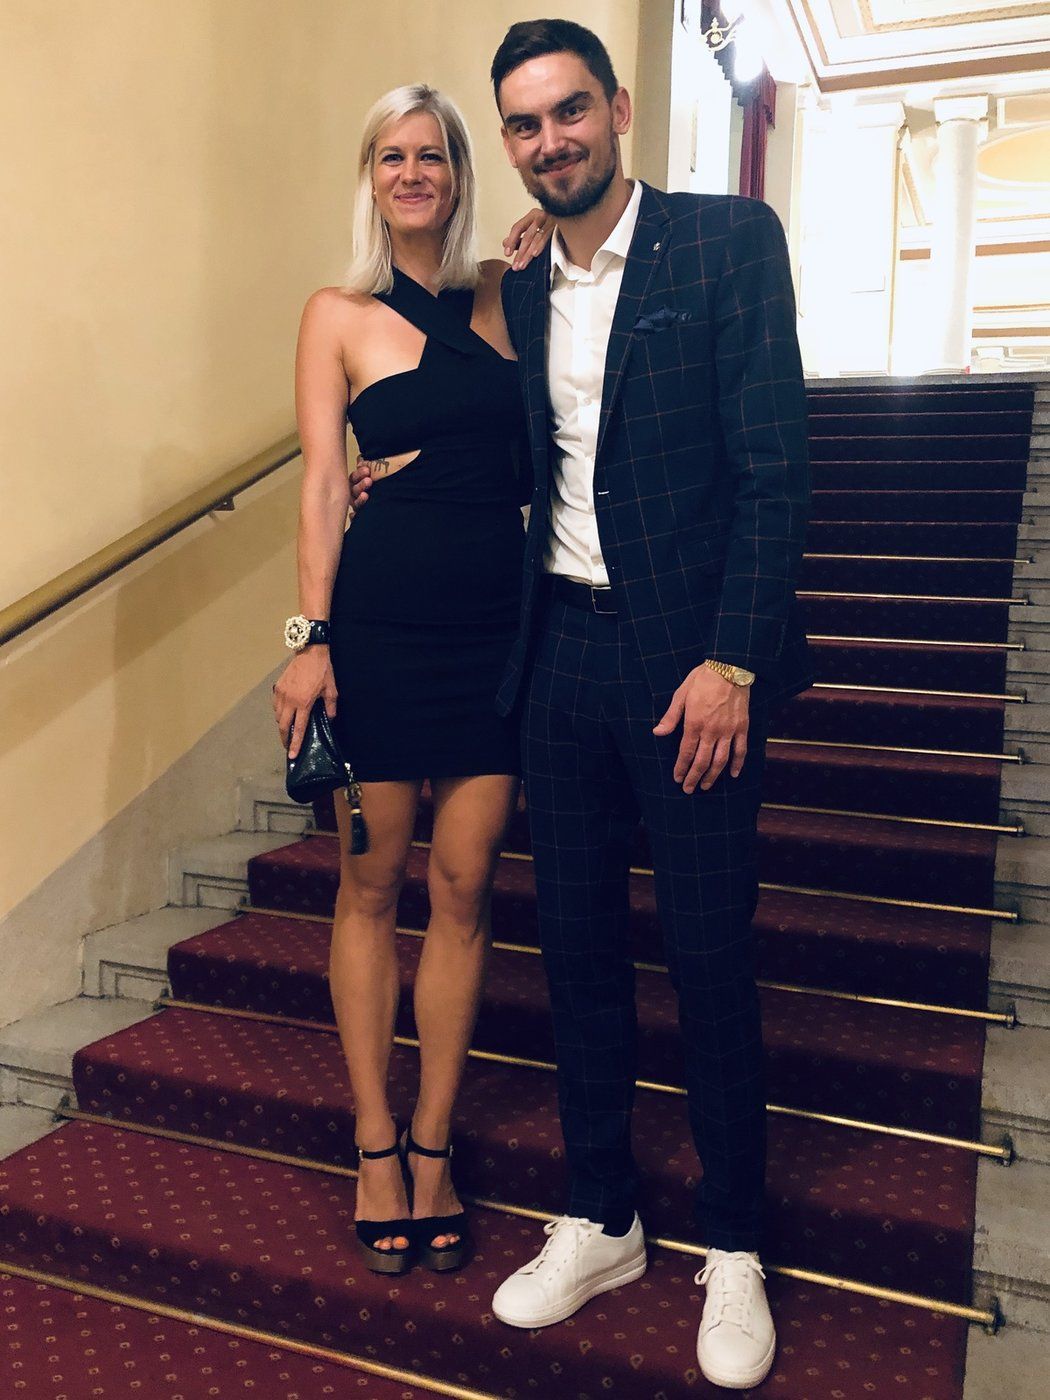 Basketbalista Tomáš Satoranský s manželkou